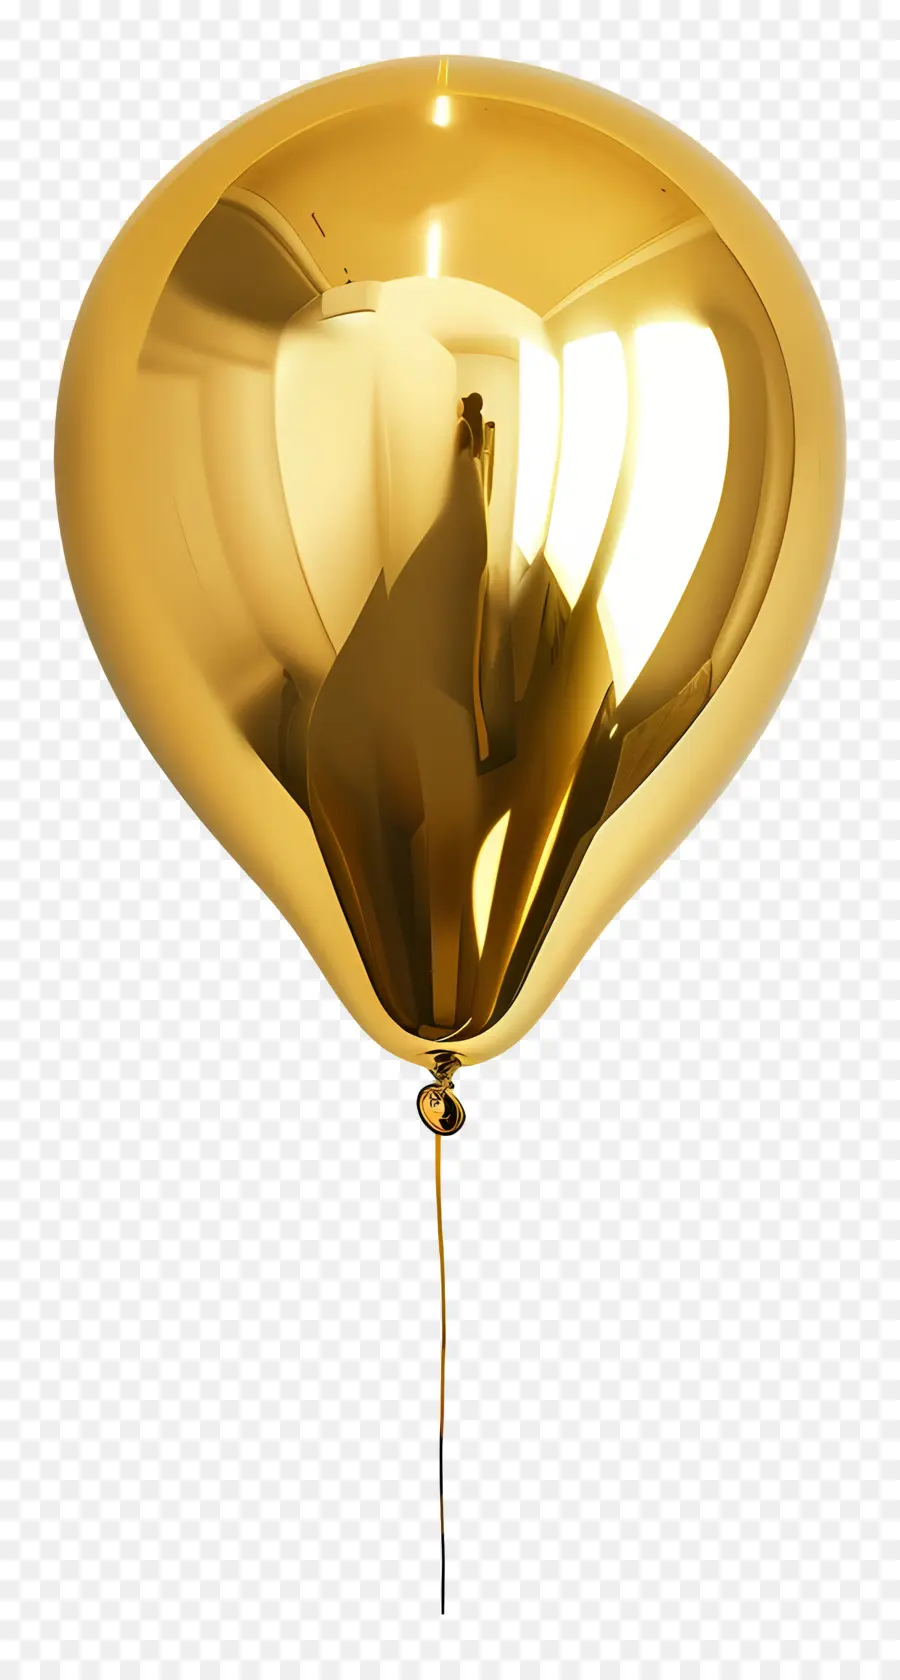 Gold balloon